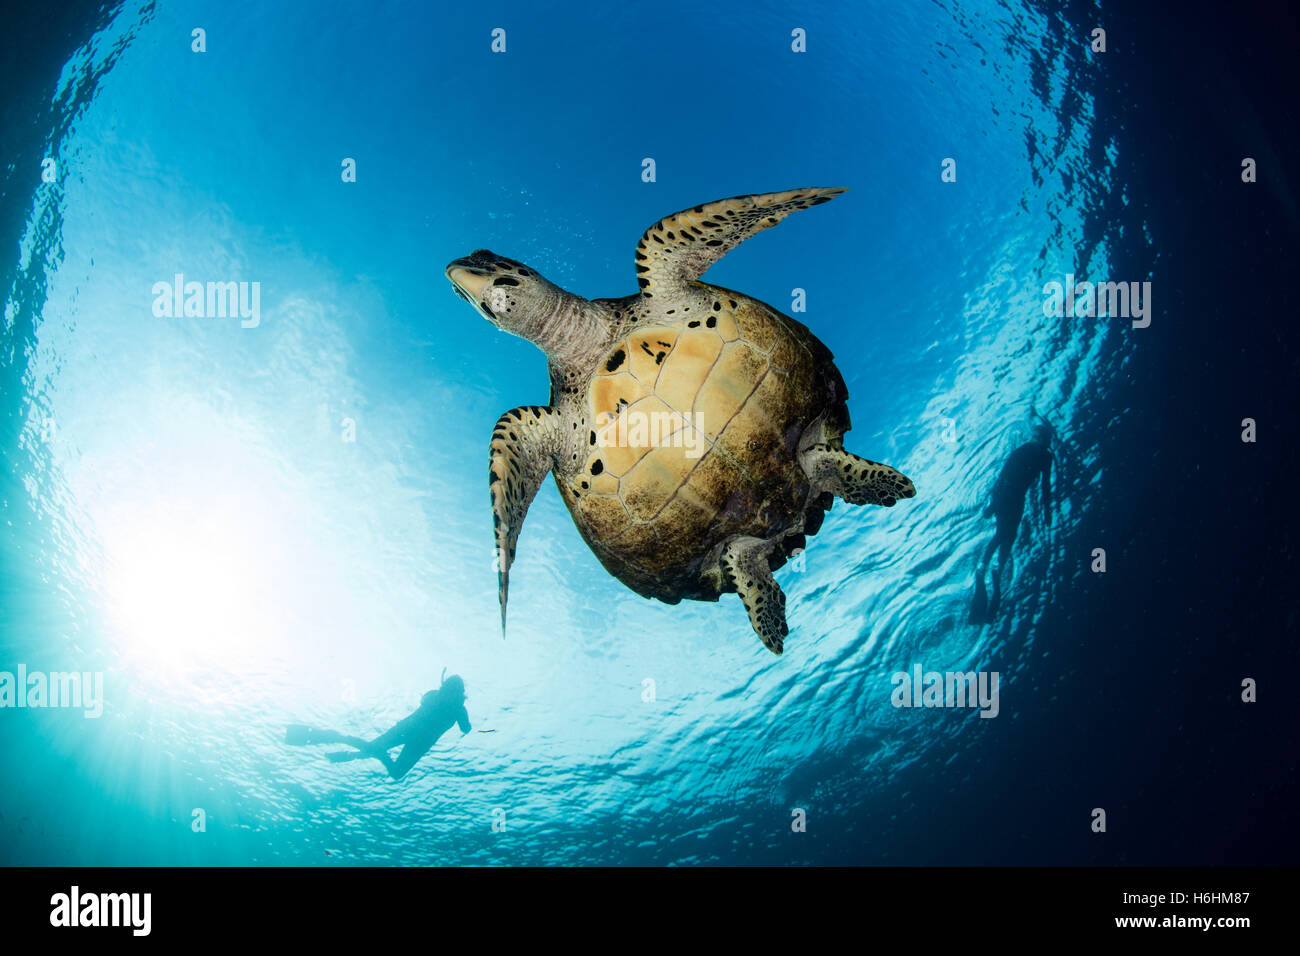 Eine echte Karettschildkröte schwimmt im blauen Wasser des tropischen Pazifiks. Diese marinen Reptilien ist eine bedrohte Art. Stockfoto